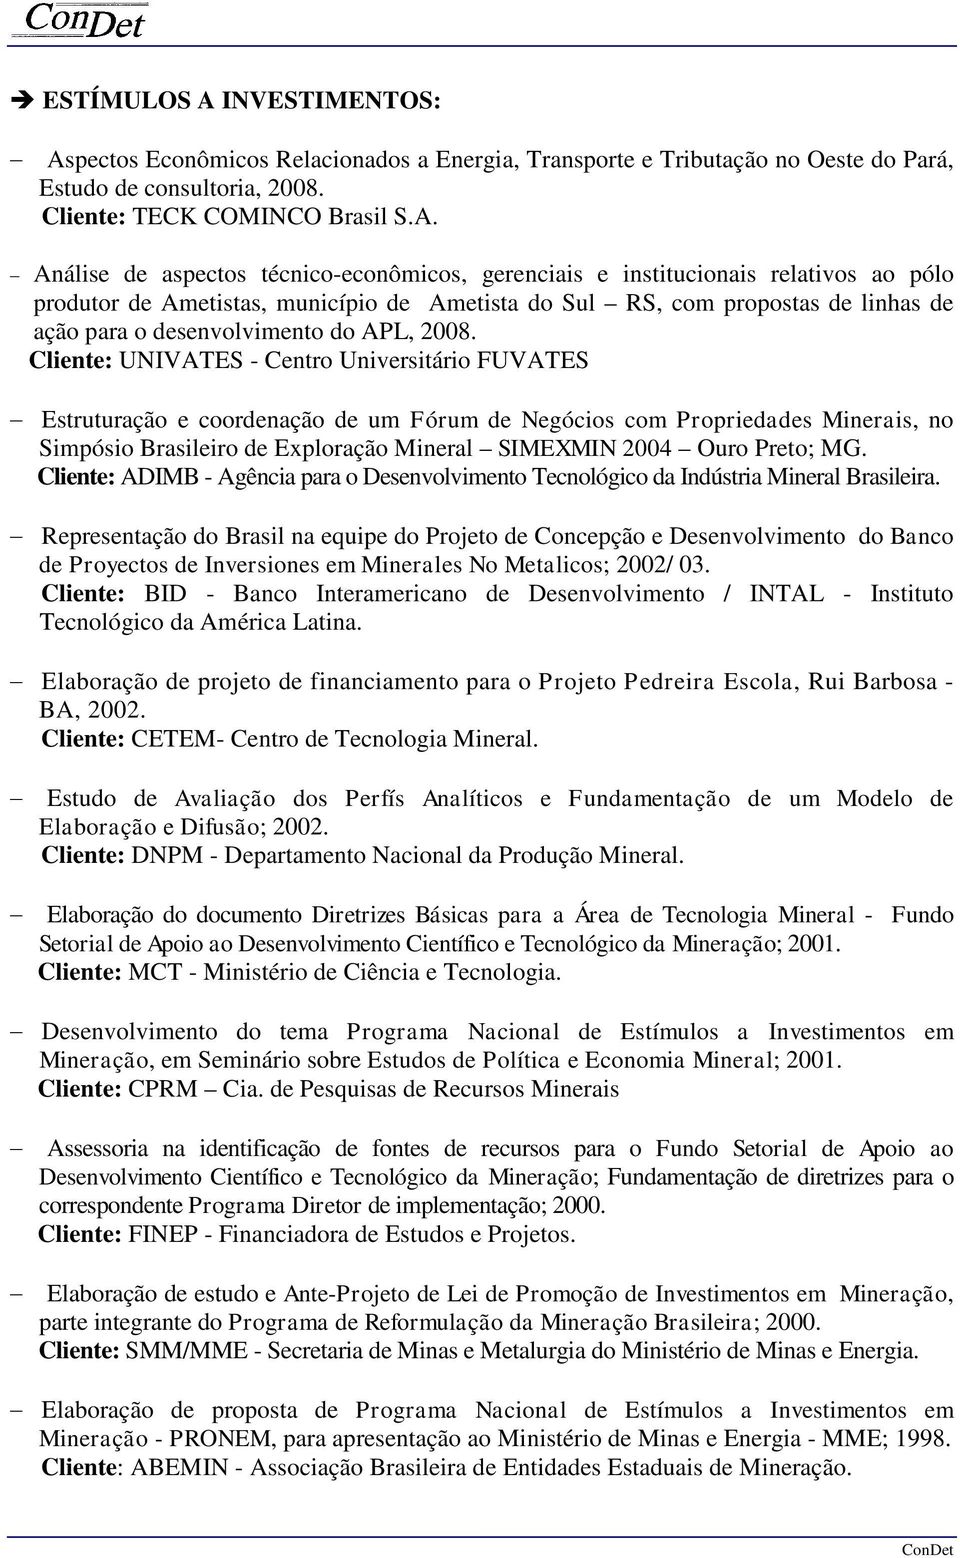 pectos Econômicos Relacionados a Energia, Transporte e Tributação no Oeste do Pará, Estudo de consultoria, 2008. Cliente: TECK COMINCO Brasil S.A.